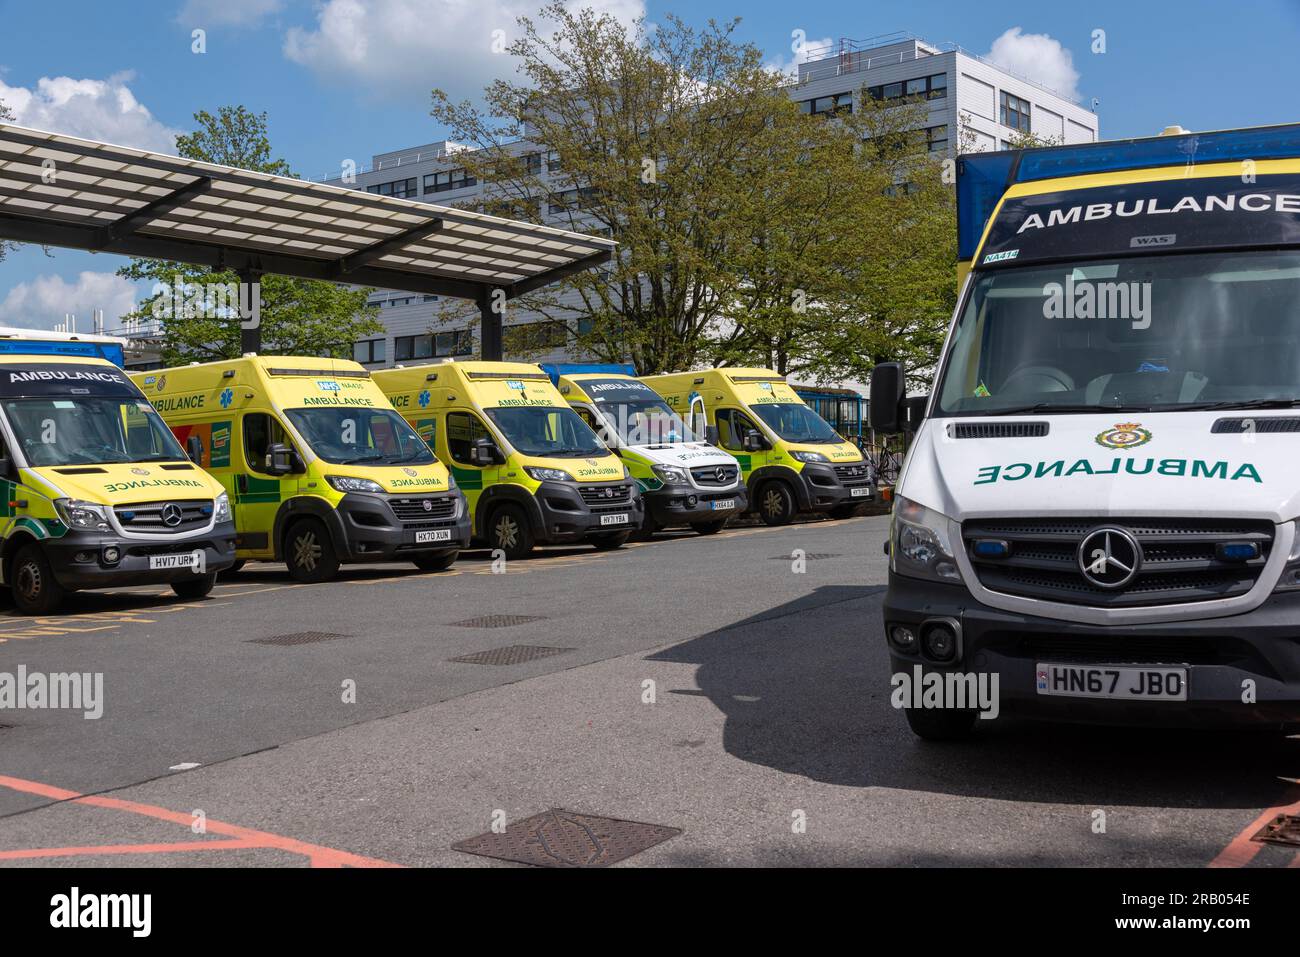 Ambulances at the John Radcliffe hospital, Oxford, UK Stock Photo